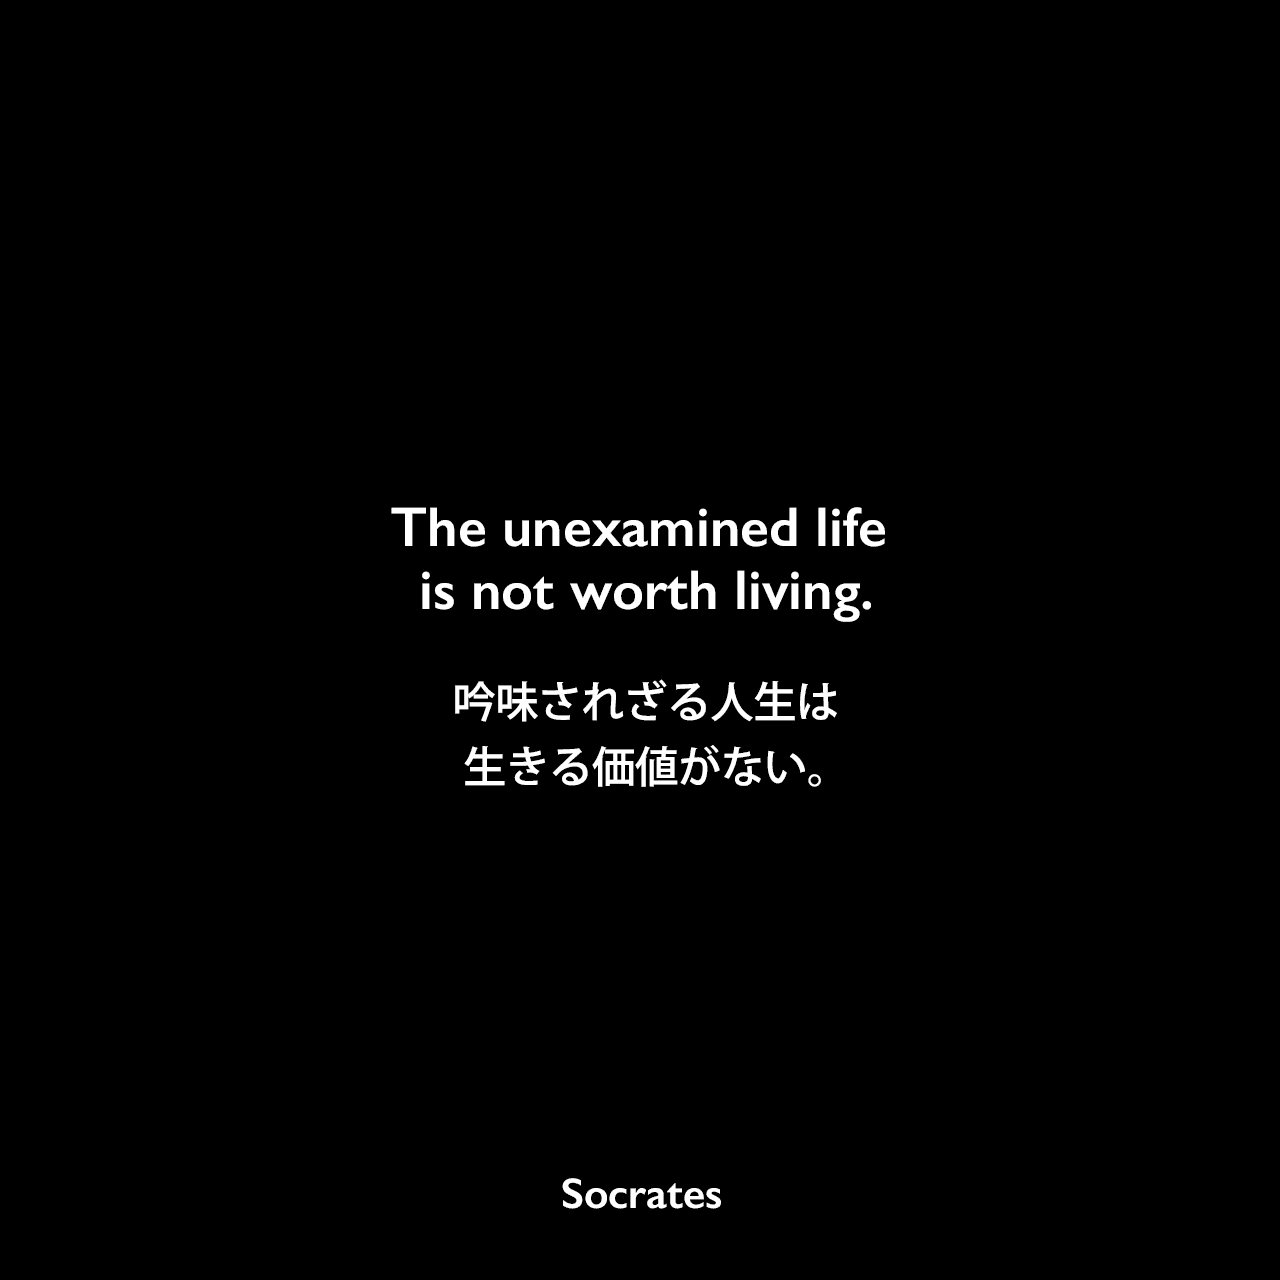 The unexamined life is not worth living.吟味されざる人生は生きる価値がない。- プラトンの本「ソクラテスの弁明」よりSocrates